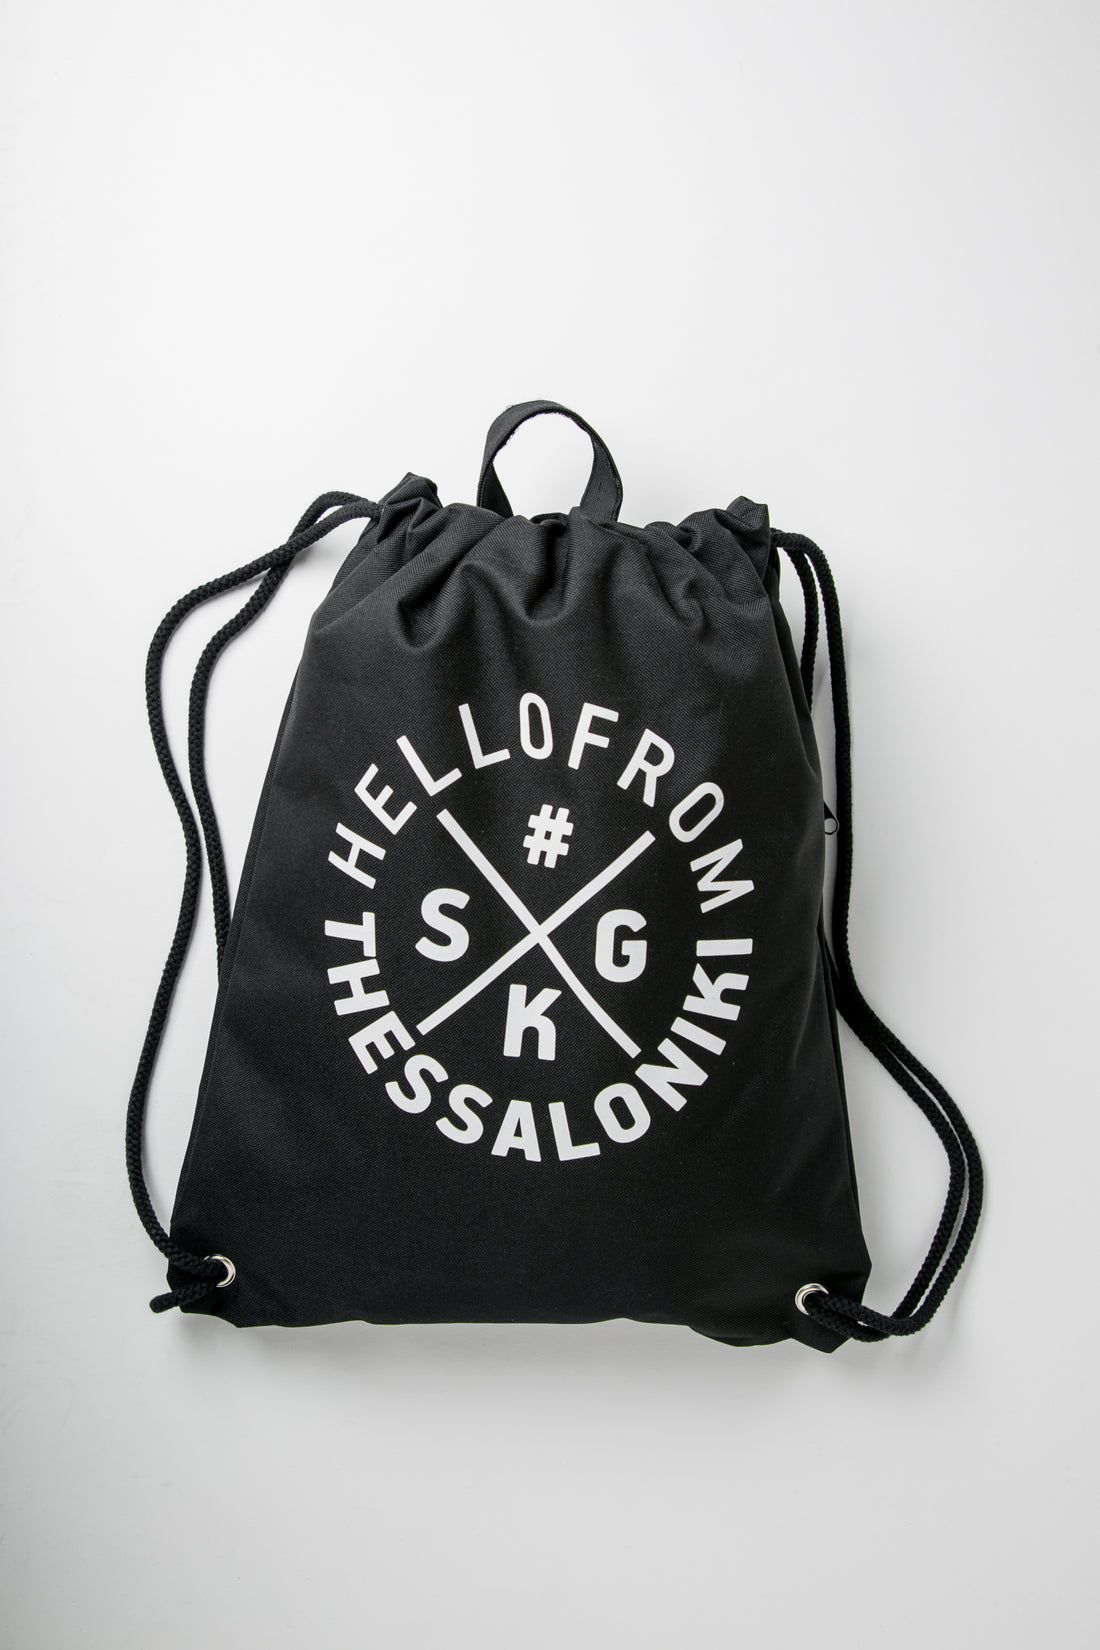 hellofrom Thessaloniki rucksack